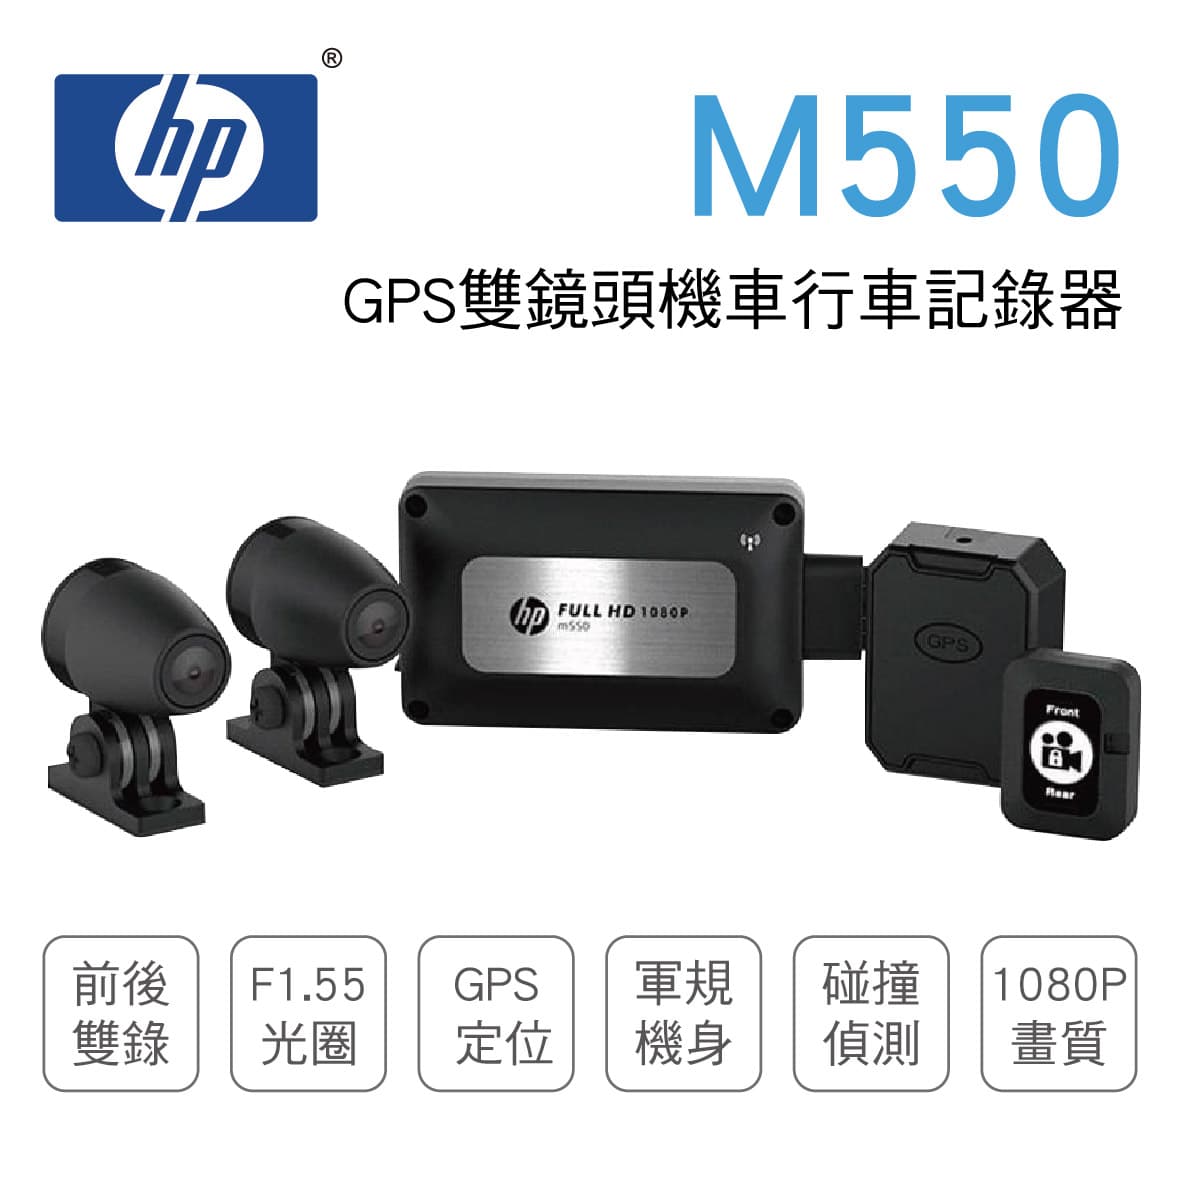 真便宜 [預購]HP惠普 M550 GPS雙鏡頭機車行車記錄器